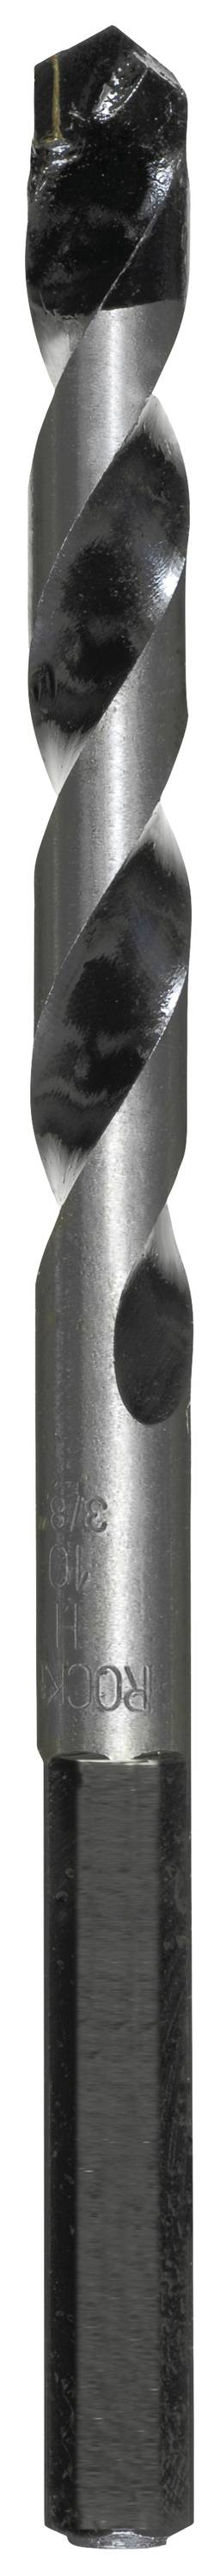 KWB 050640 Hartmetall Beton-Spiralbohrer 4.0 mm Gesamtlänge 100 mm Zylinderschaft 1 Stück (050640)